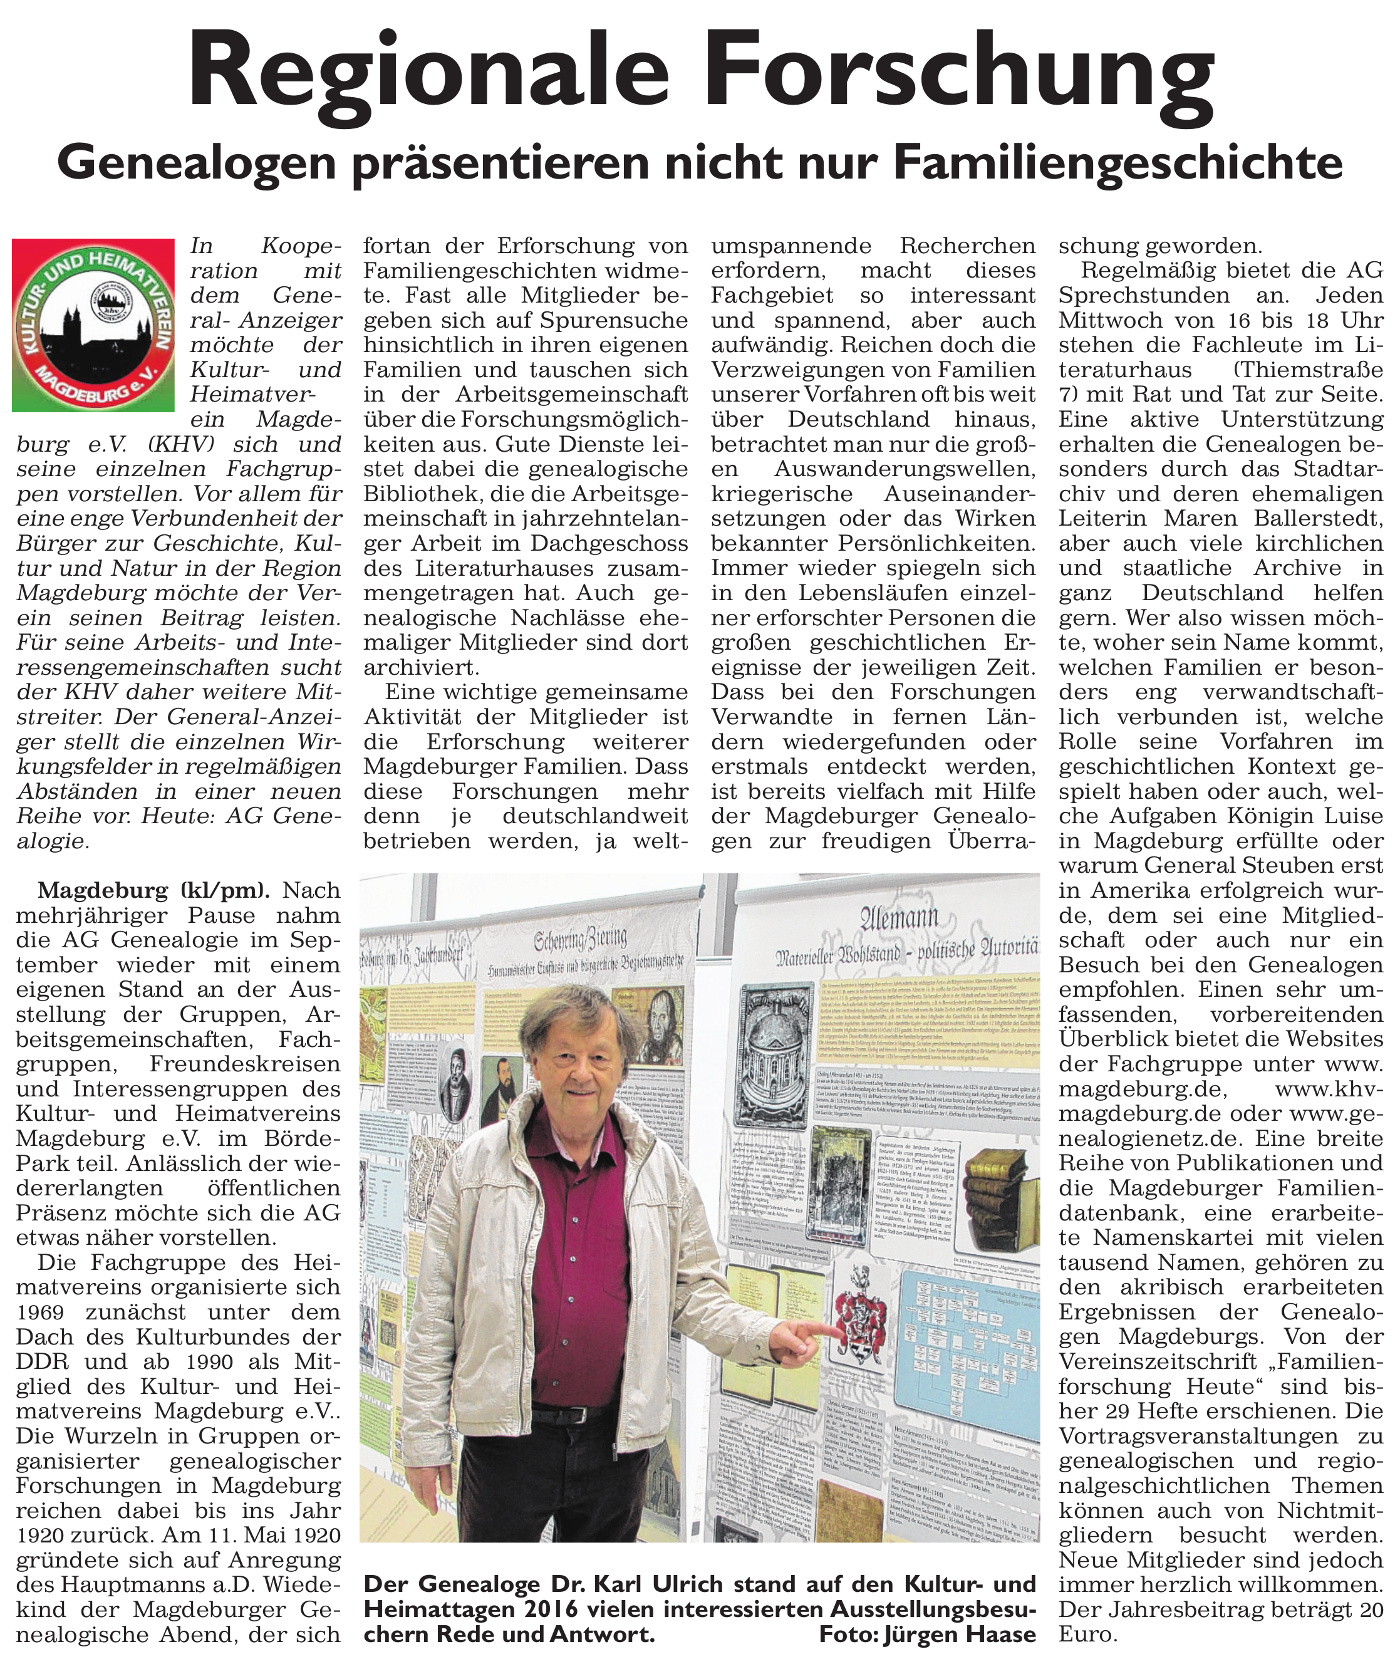 Bericht im General-Anzeiger Magdeburg über die AG